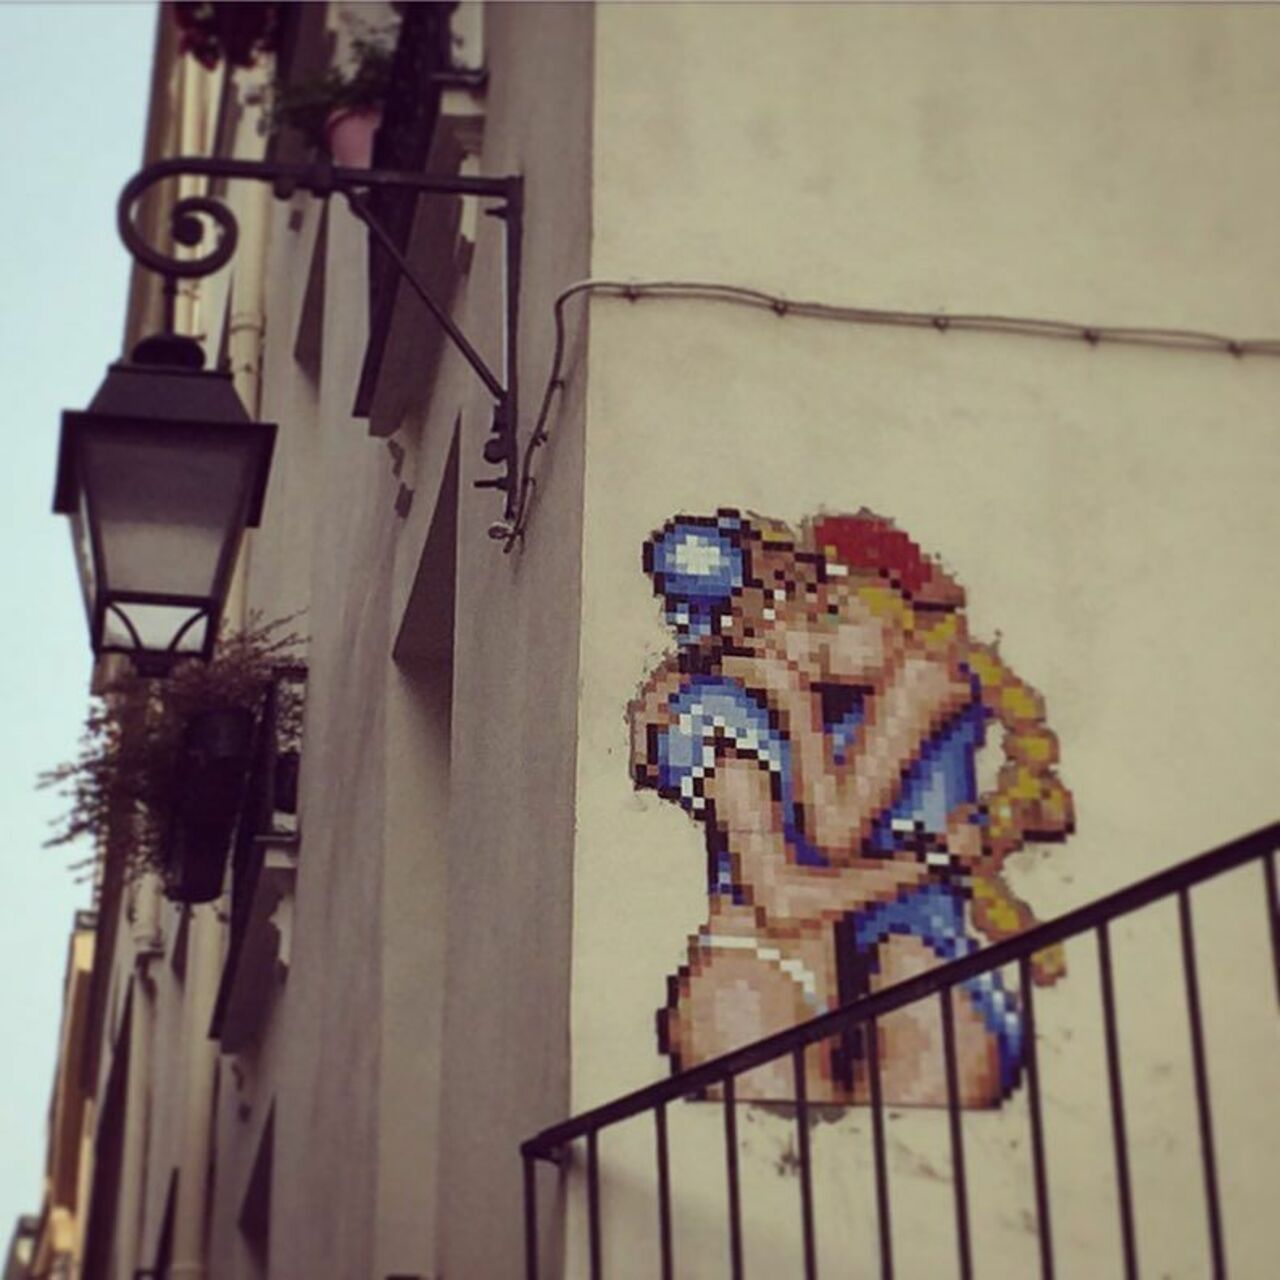 #Paris #graffiti photo by @sflp http://ift.tt/1S5GADB #StreetArt https://t.co/7w6ev0W4bC